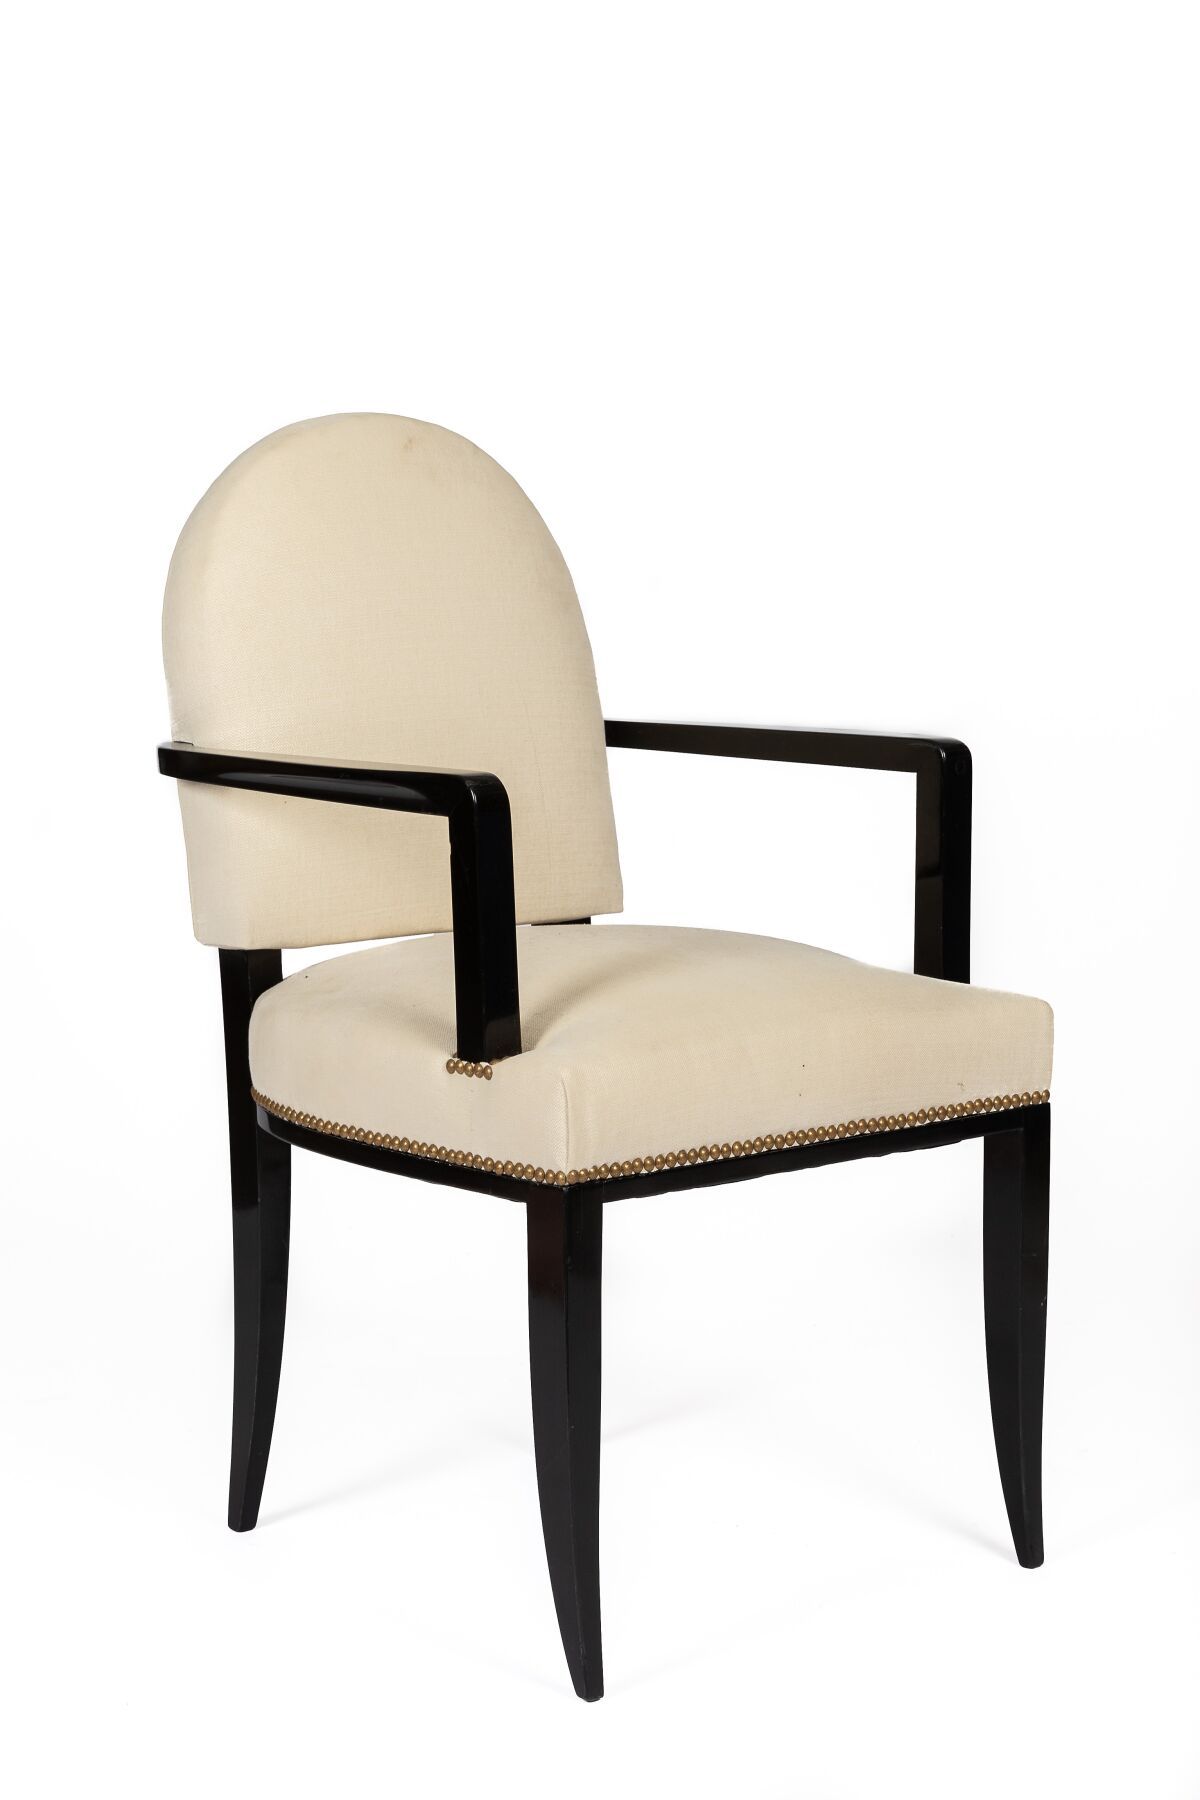 Null 让-帕斯考德（1903-1996）。

发黑的木质办公扶手椅，有马刀腿。

扶手是凹进去的。

装饰艺术时期。

座椅和靠背采用米色皮革装饰。

高_&hellip;